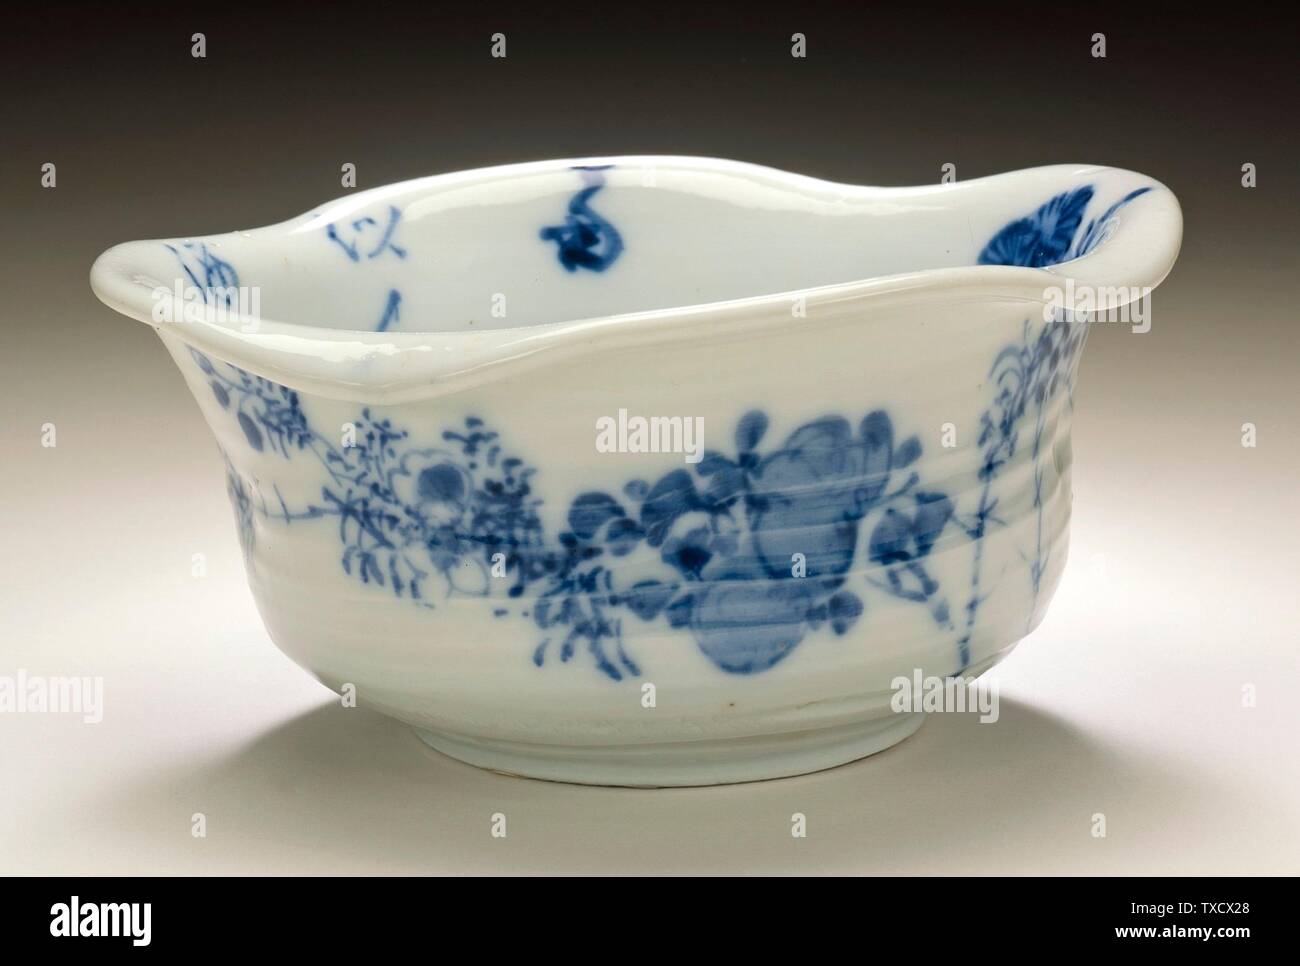 Tazza di lavaggio della tazza di sake della tazza con I Disegni cinesi Del  Poem e del Floral; il Giappone, Gli Arredi del secolo 18th-19th; le  ceramiche di Hirado; la porcellana con